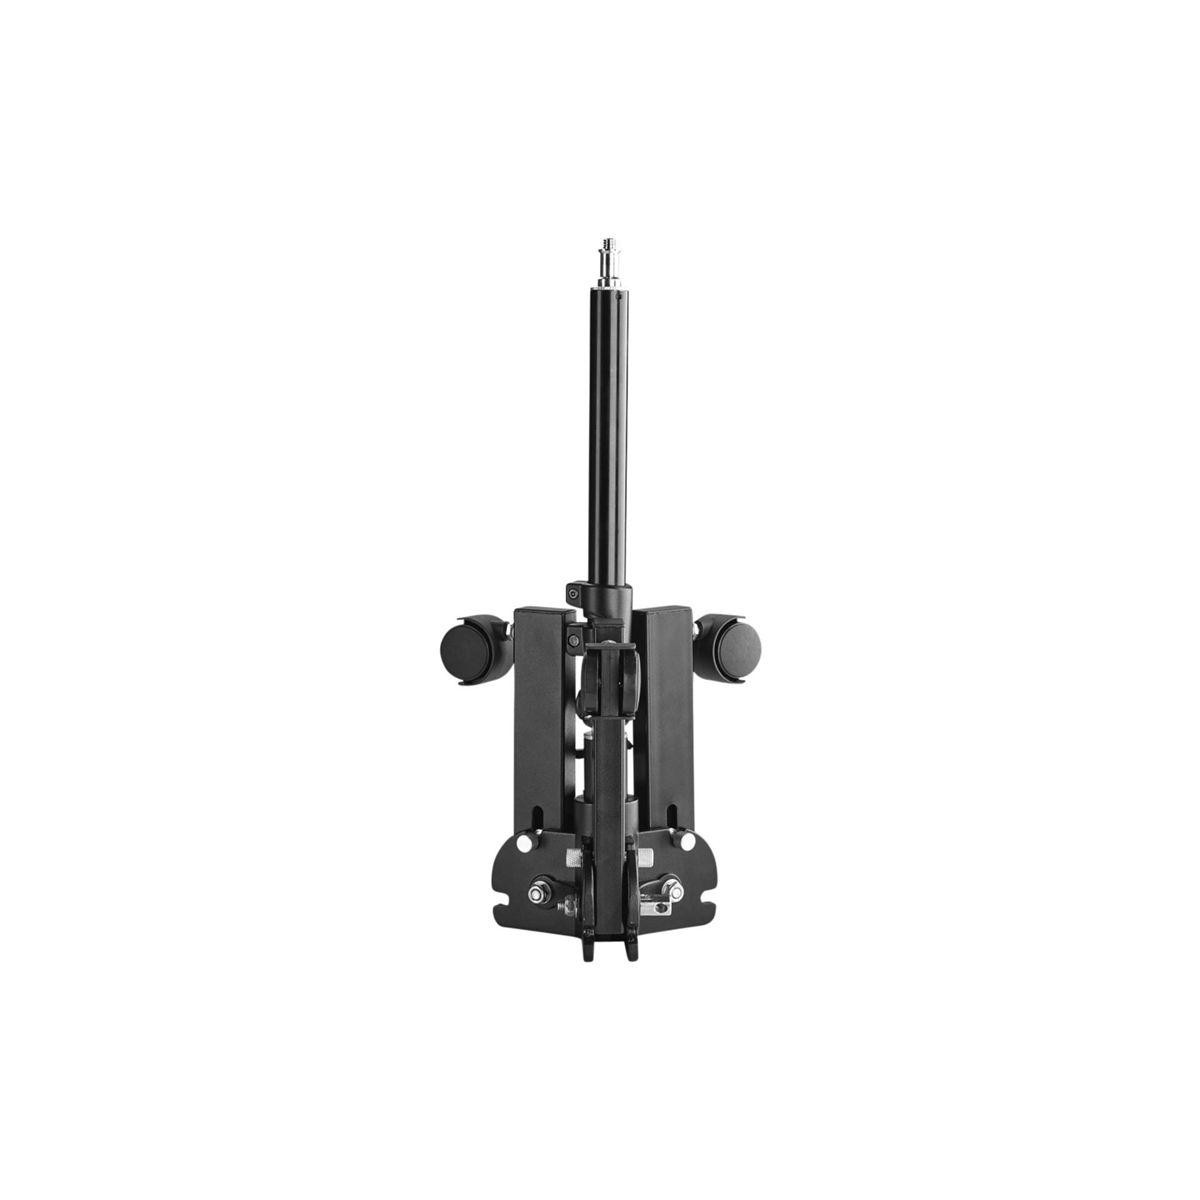 WALIMEX pro Rollstativ, 70 schwarz, kompakt, 70cm cm Rollstativ bis Höhe Boden offen